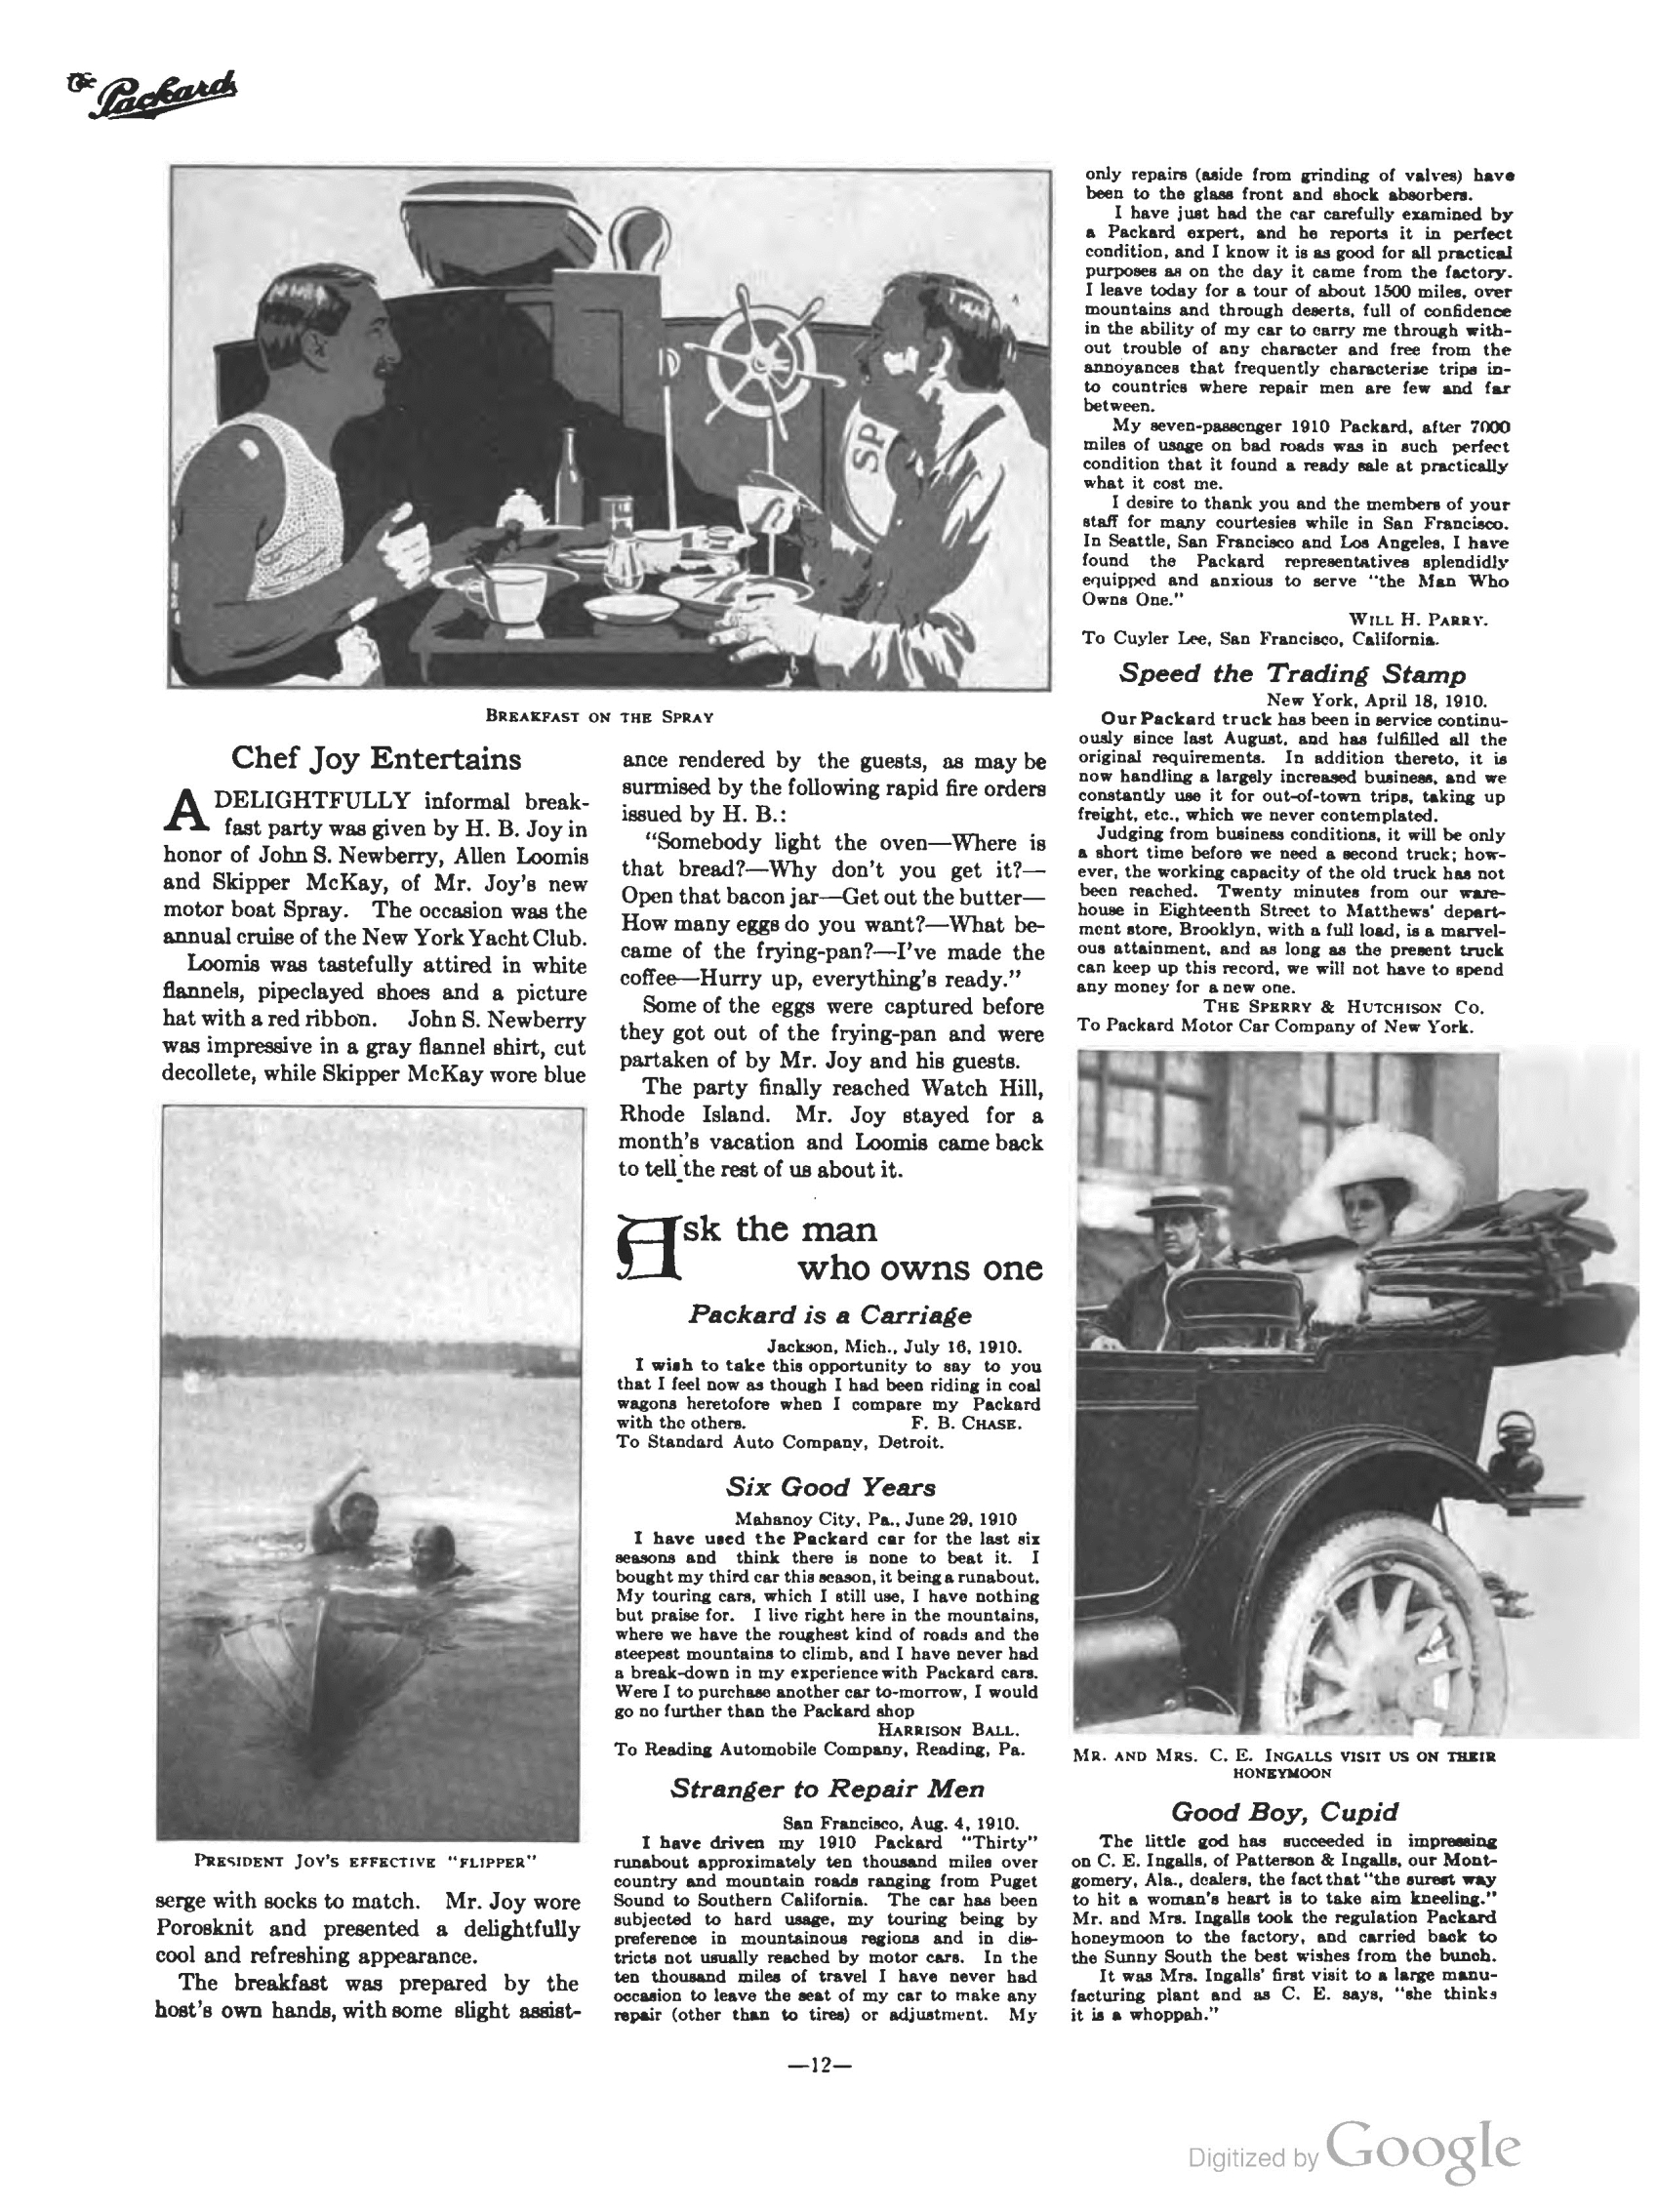 1910_The_Packard_Newsletter-142